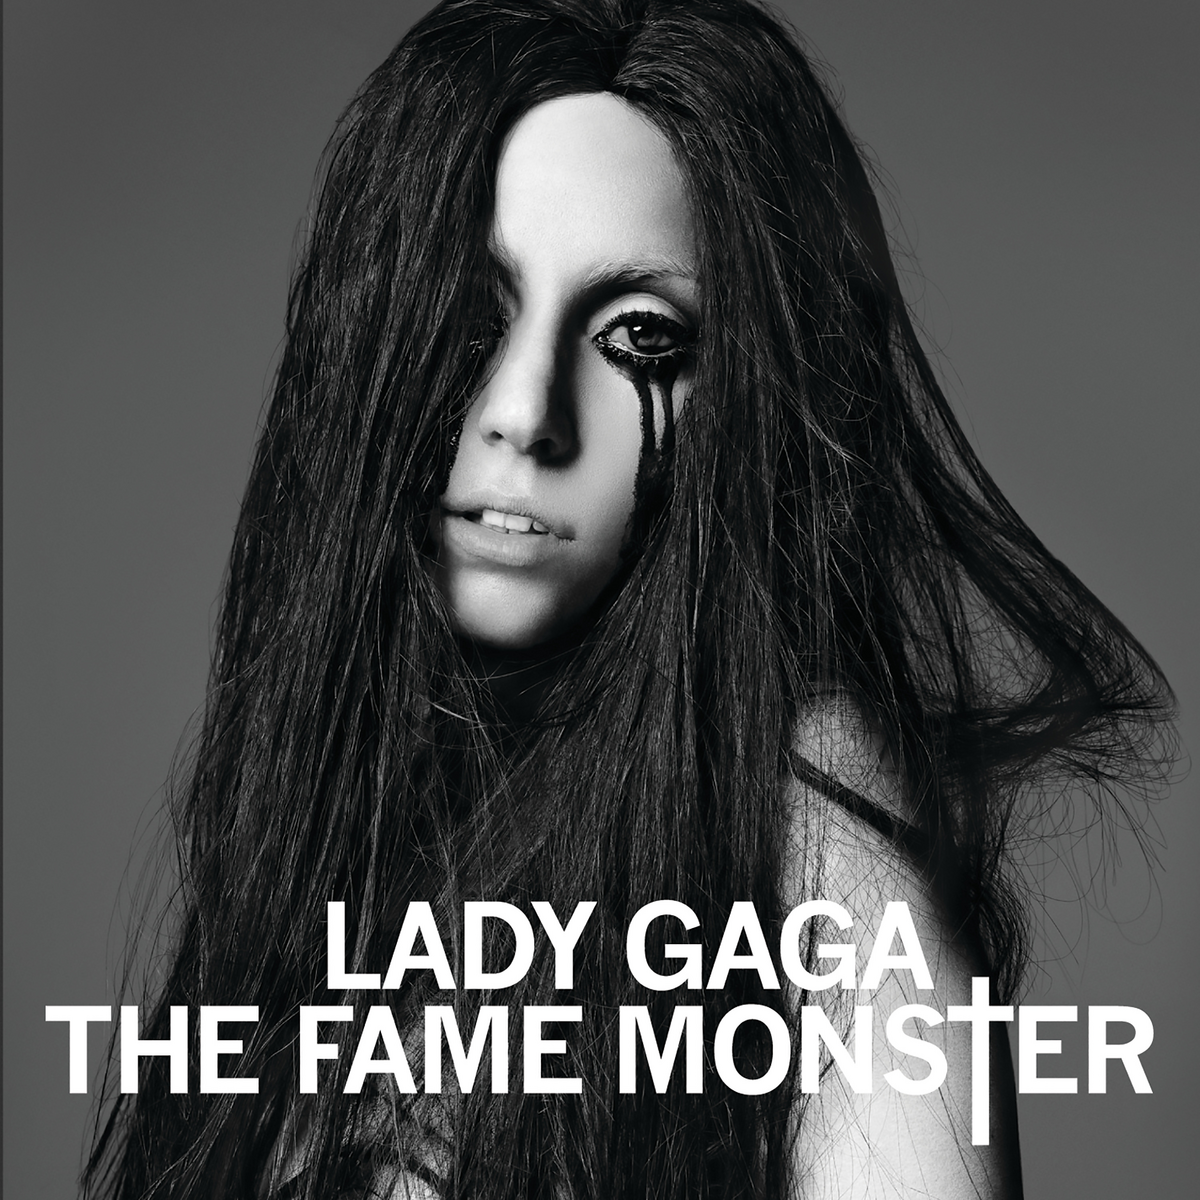 Lady gaga dance текст. Lady Gaga "the Fame Monster". The Fame Monster. Lady Gaga компакт диски мп3. Леди монстр.